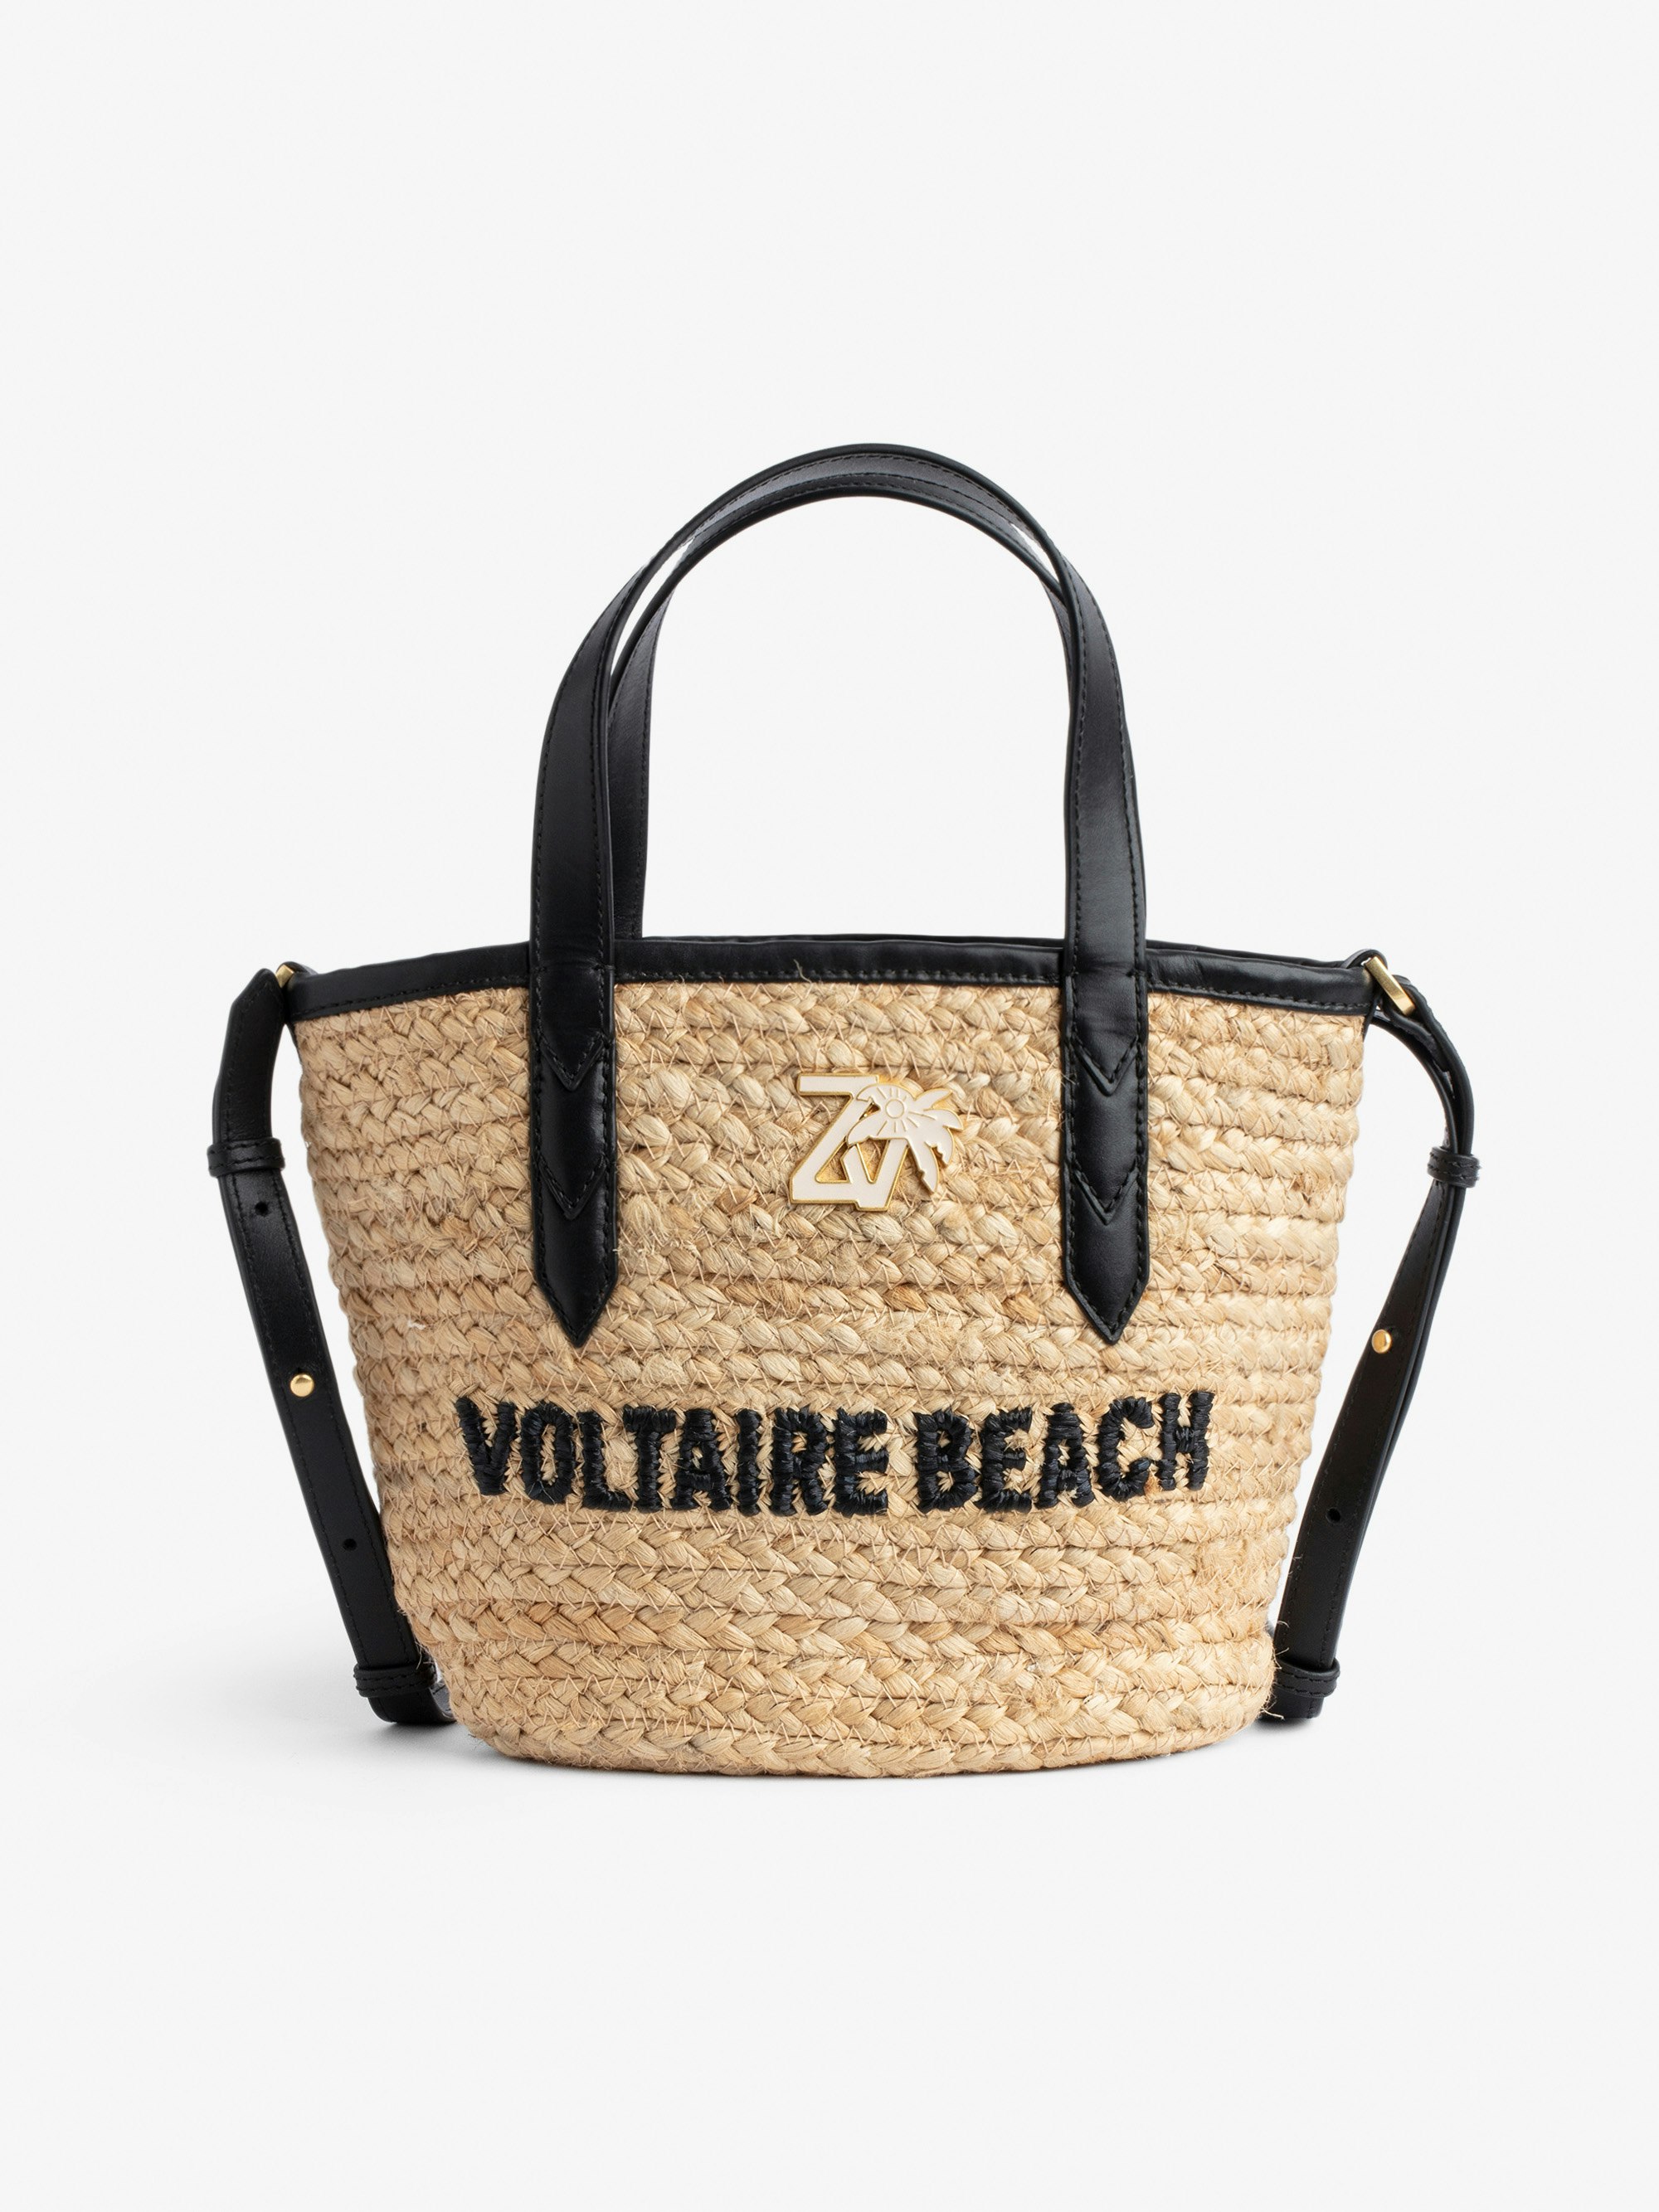 Bolso Le Baby Beach Bag - Bolso de paja con bandolera de cuero color negro, bordado «Voltaire Beach» y con colgante ZV Mujer